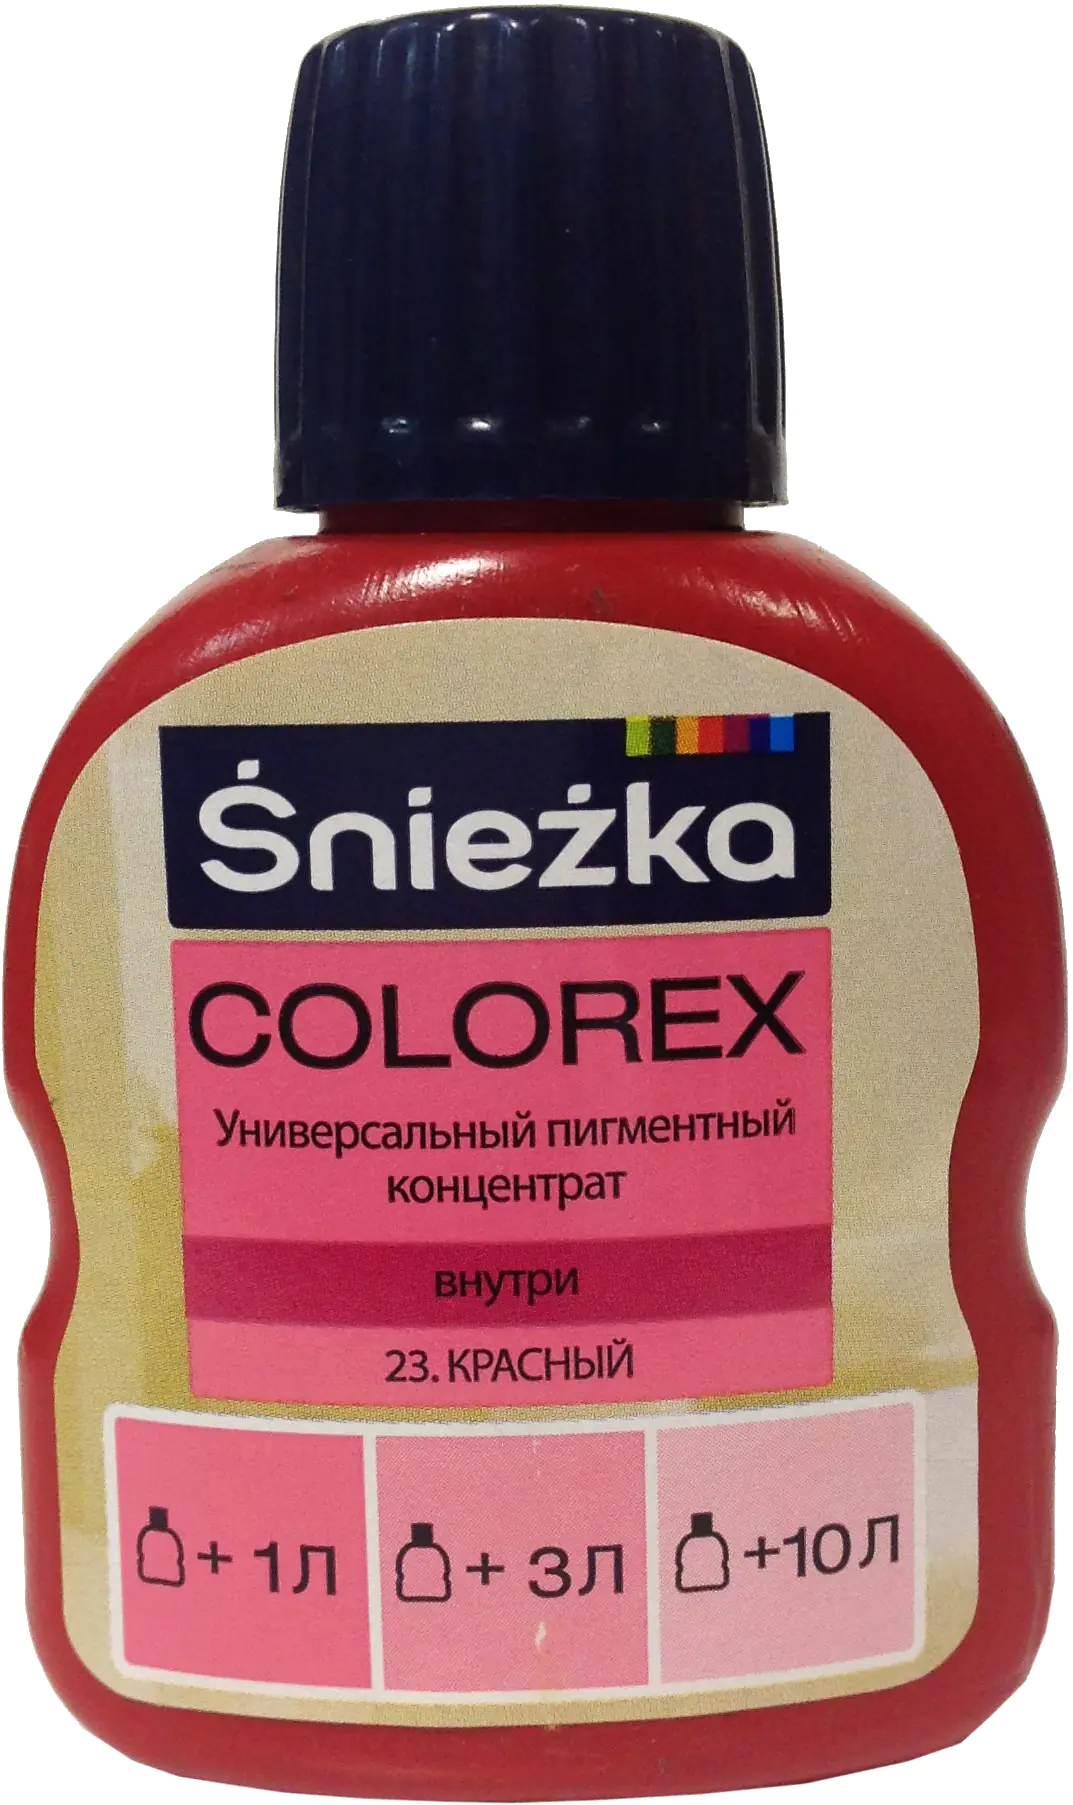 Колер Sniezka Colorex №23. Красный. 100 мл. Польша.